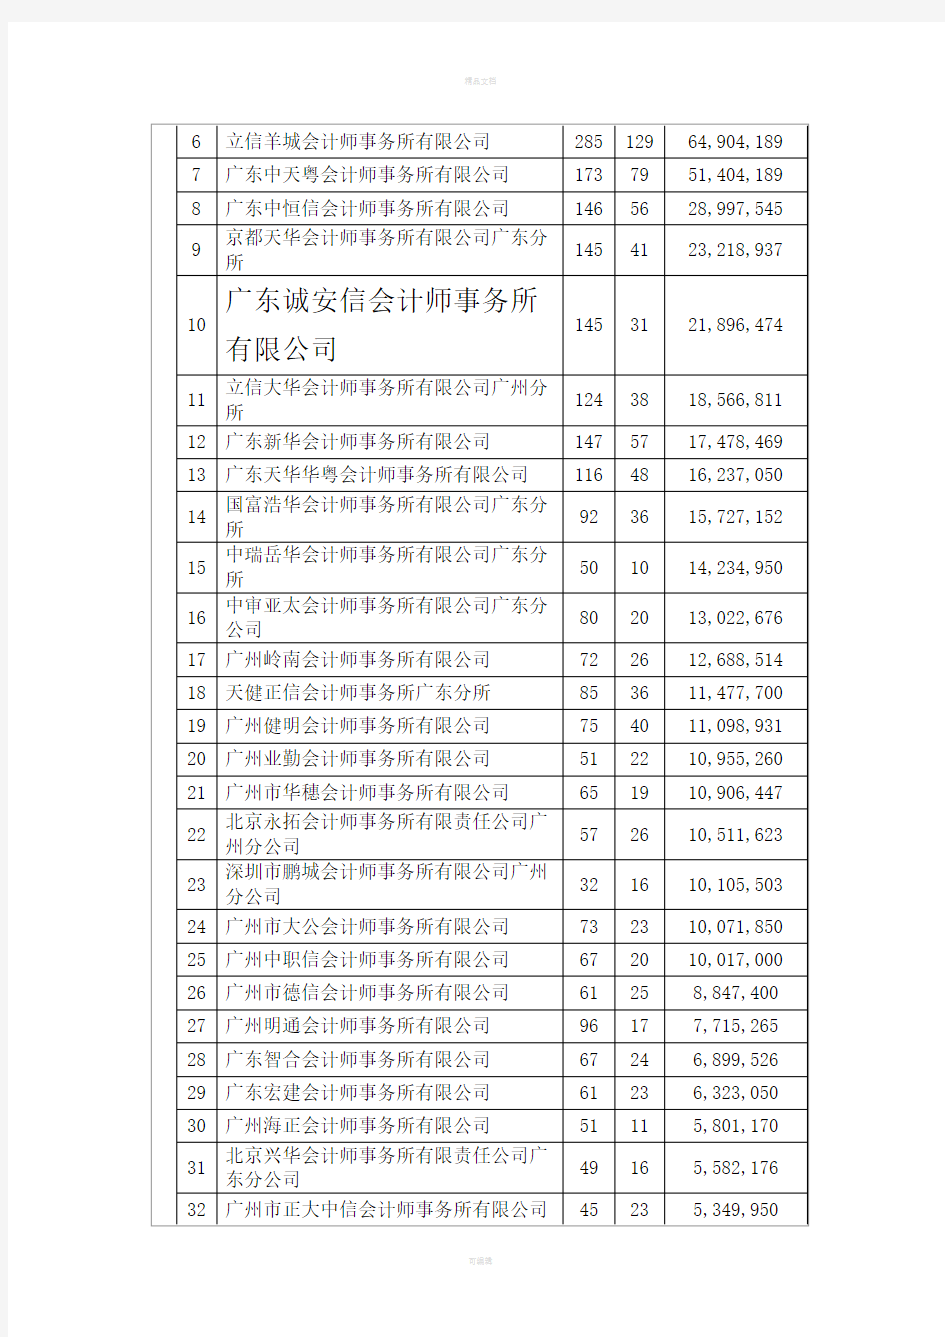 广州会计师事务所收入排名我所名列第10